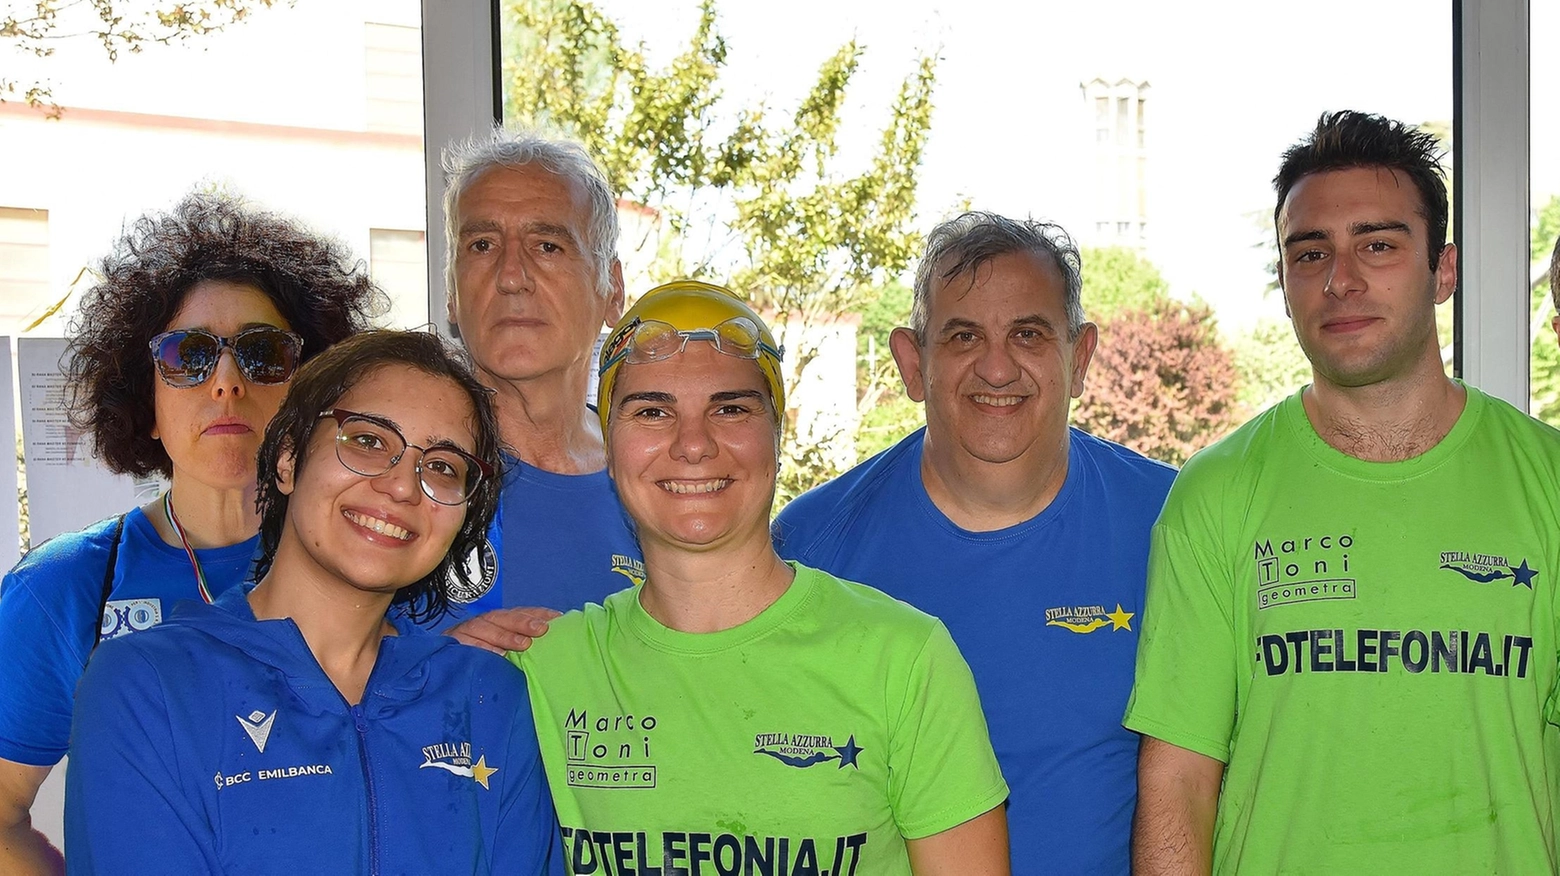 Il 22° Trofeo Città di Molinella ha visto la partecipazione di oltre 250 atleti nel circuito Master della Federazione Italiana Nuoto. La società Stella Azzurra Modena asd ha ottenuto diverse medaglie, confermando il proprio valore in vasca.